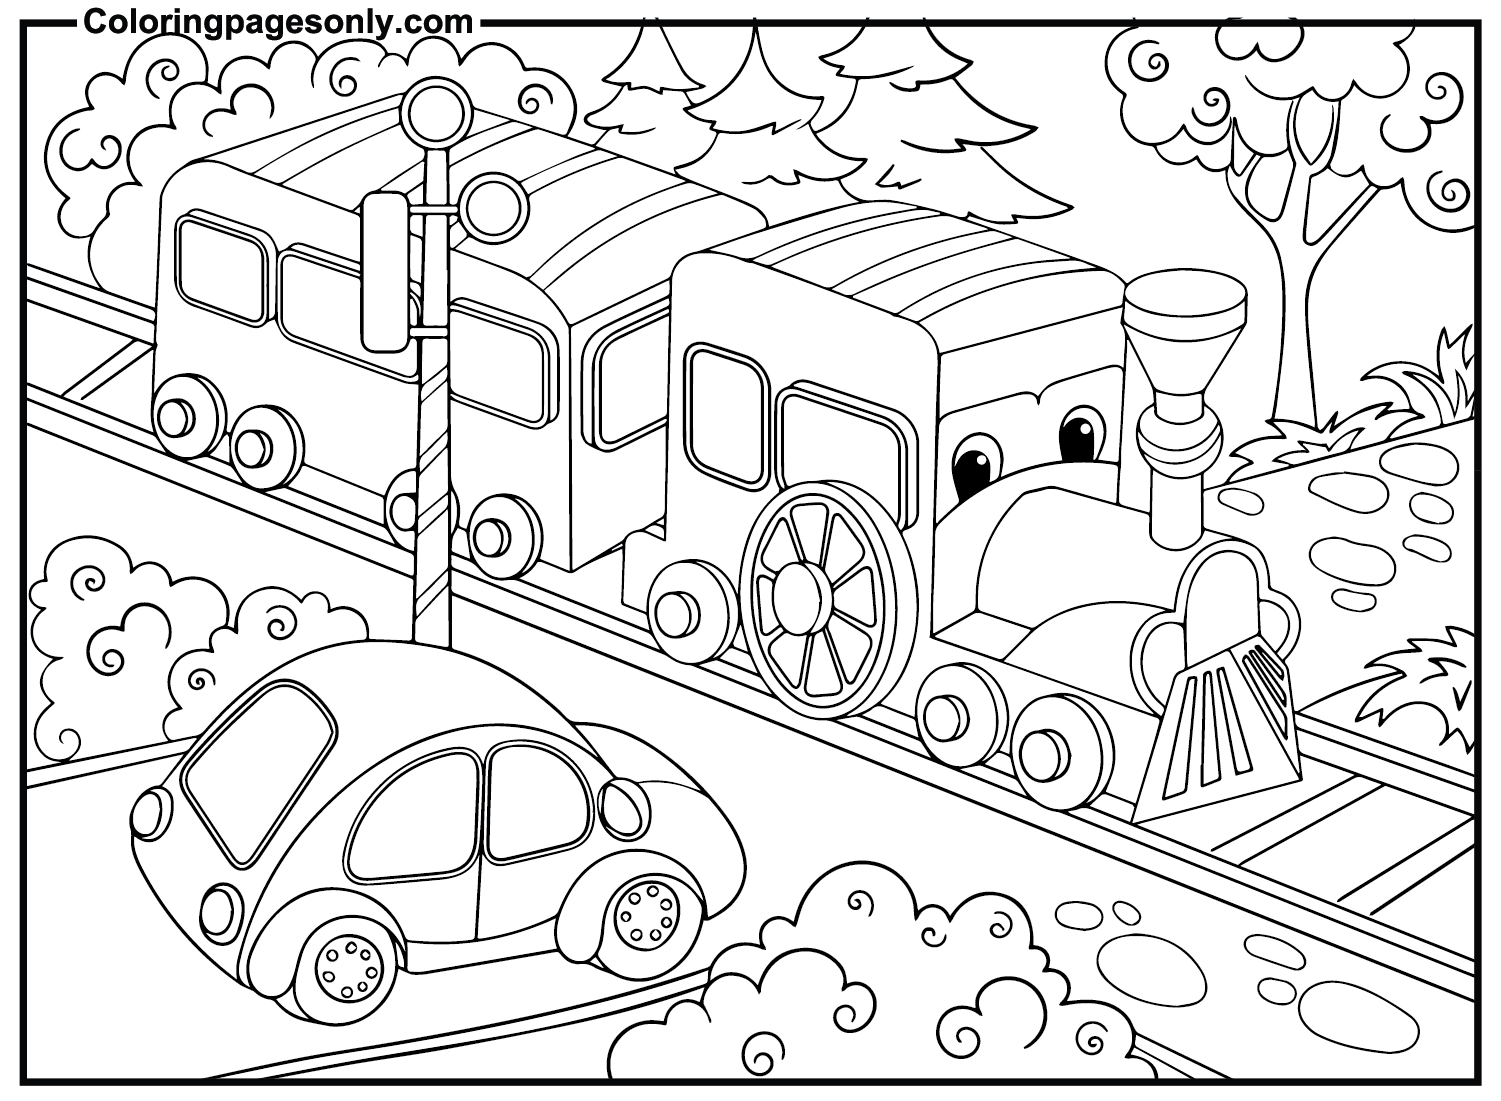 Train de dessin animé du train